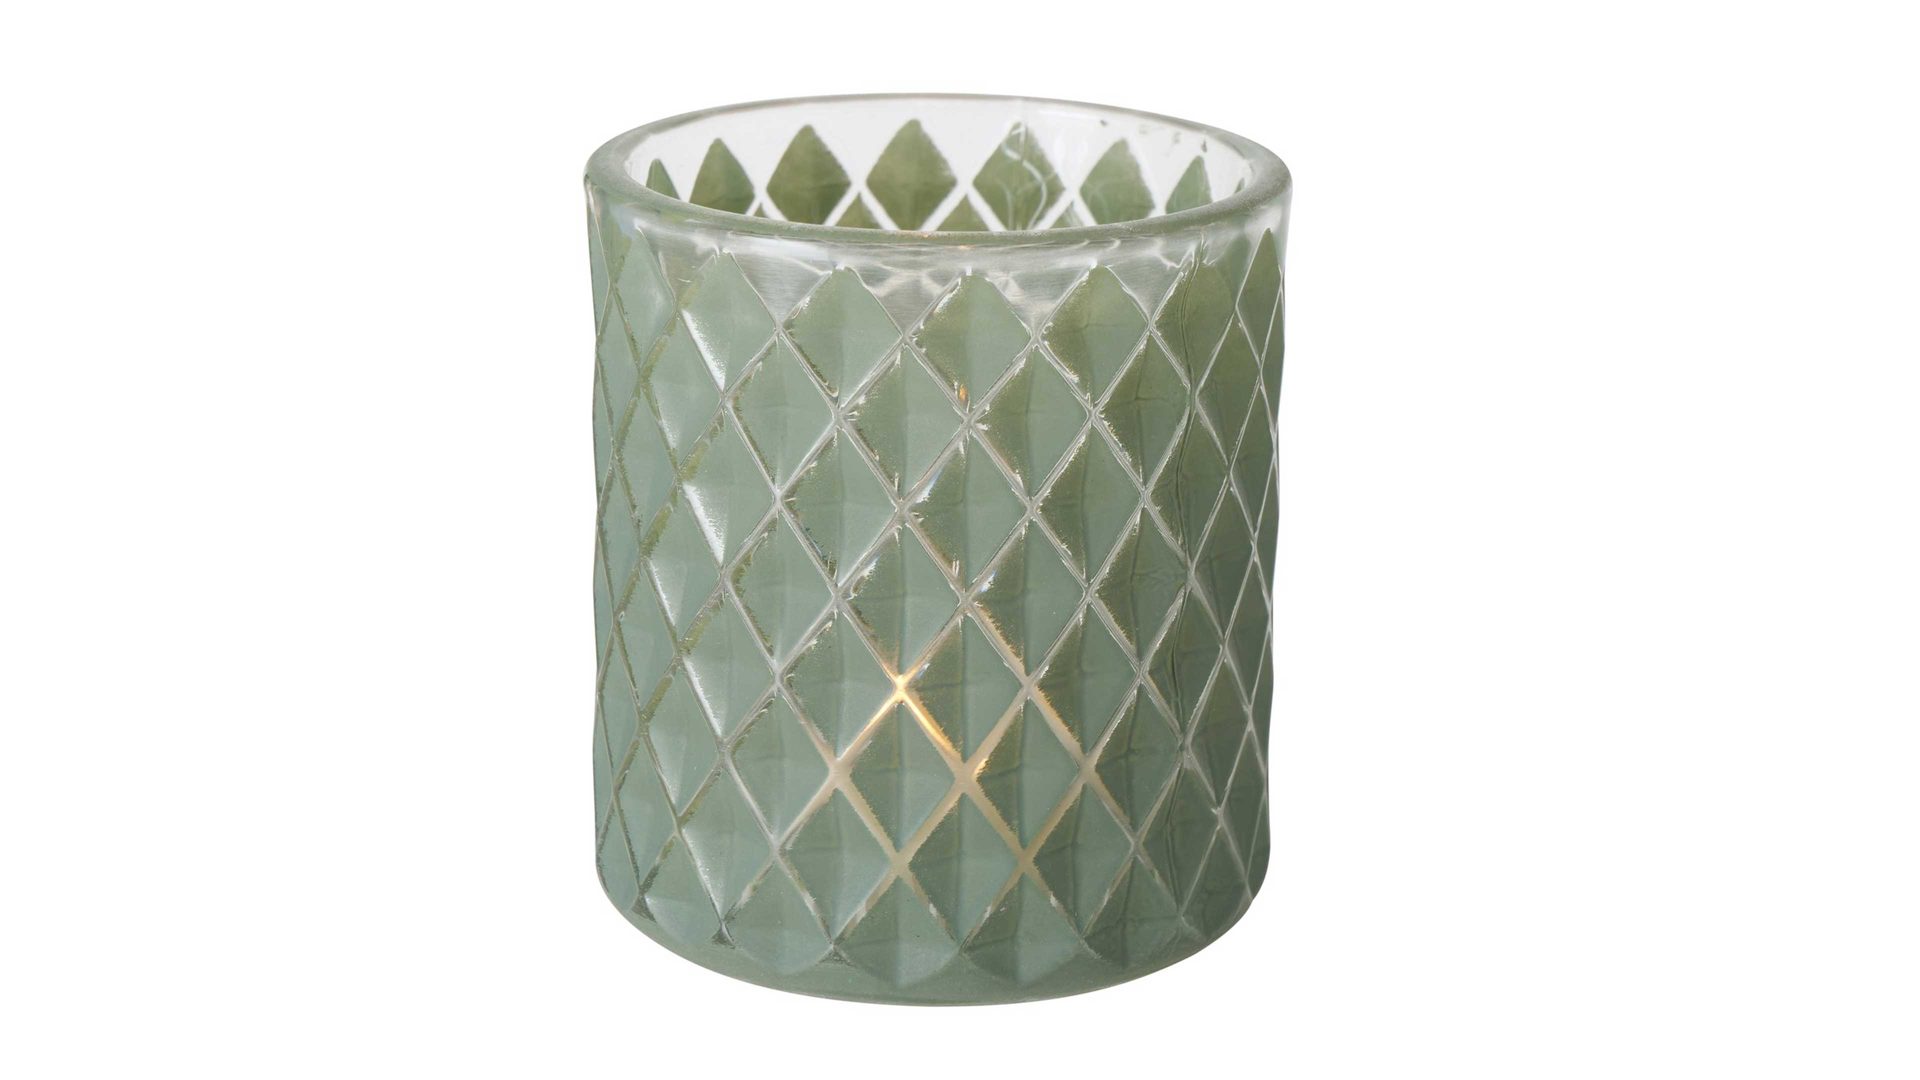 Windlicht Boltze aus Glas in Grün Teelichtglas Dustin Raute grünes Glas - Höhe ca. 9 cm